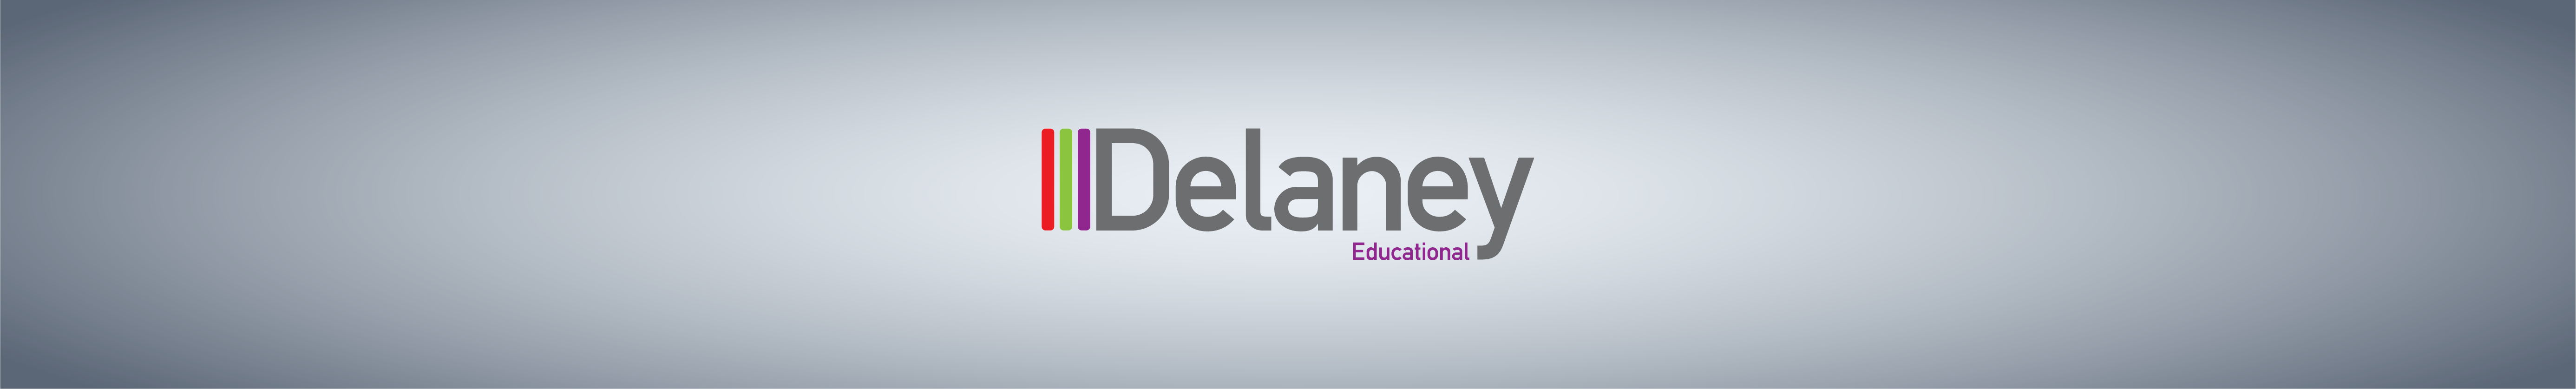 Delaney Web Banner 3